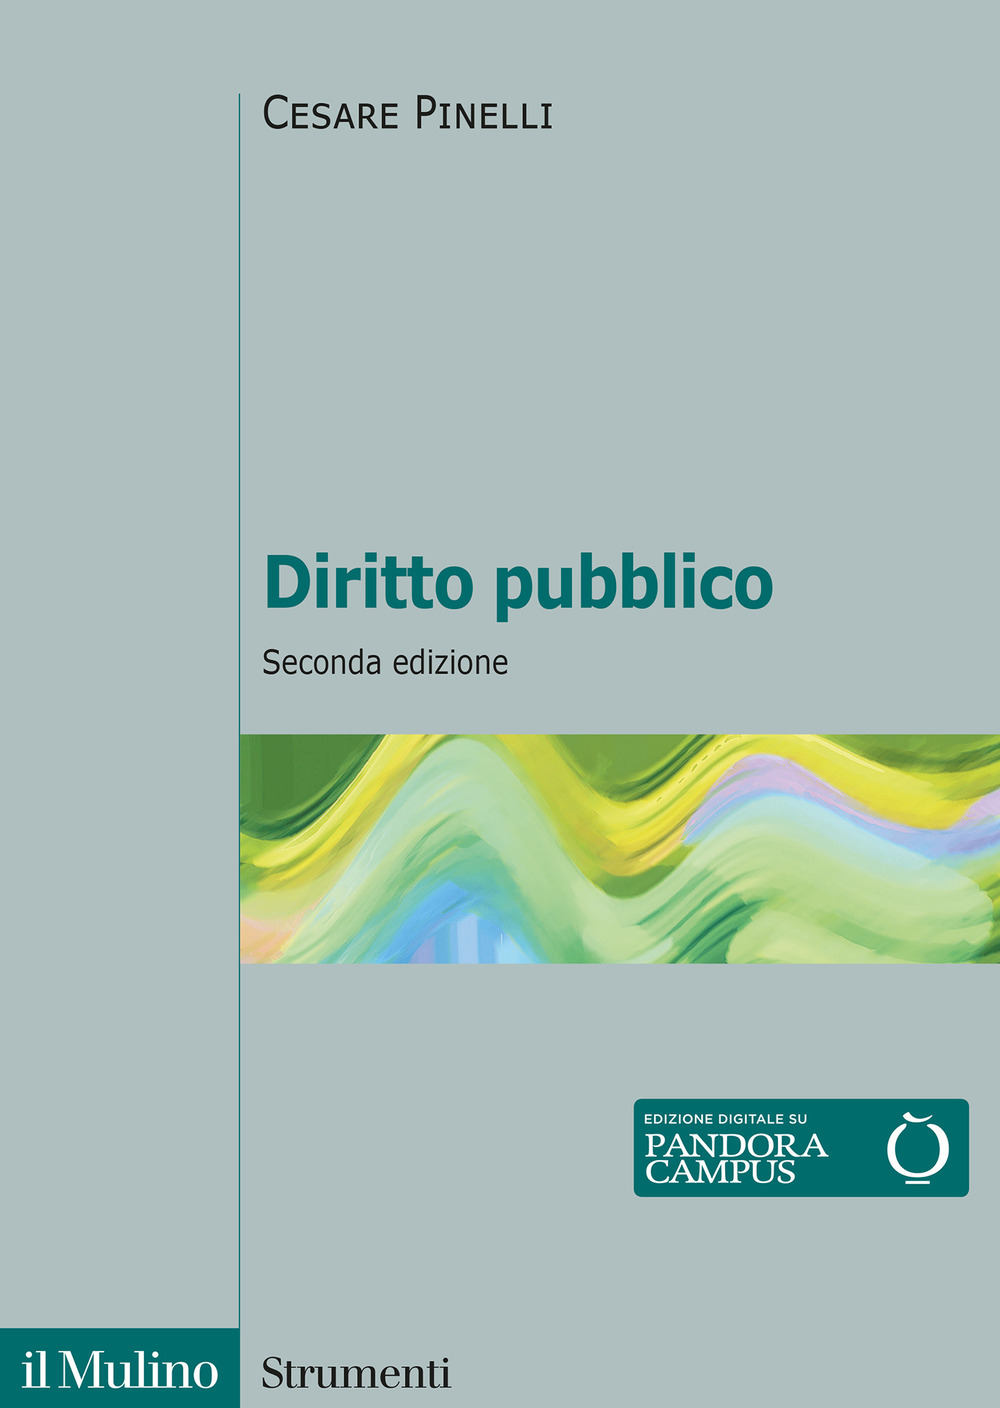 Libri Cesare Pinelli - Diritto Pubblico NUOVO SIGILLATO, EDIZIONE DEL 22/07/2022 SUBITO DISPONIBILE